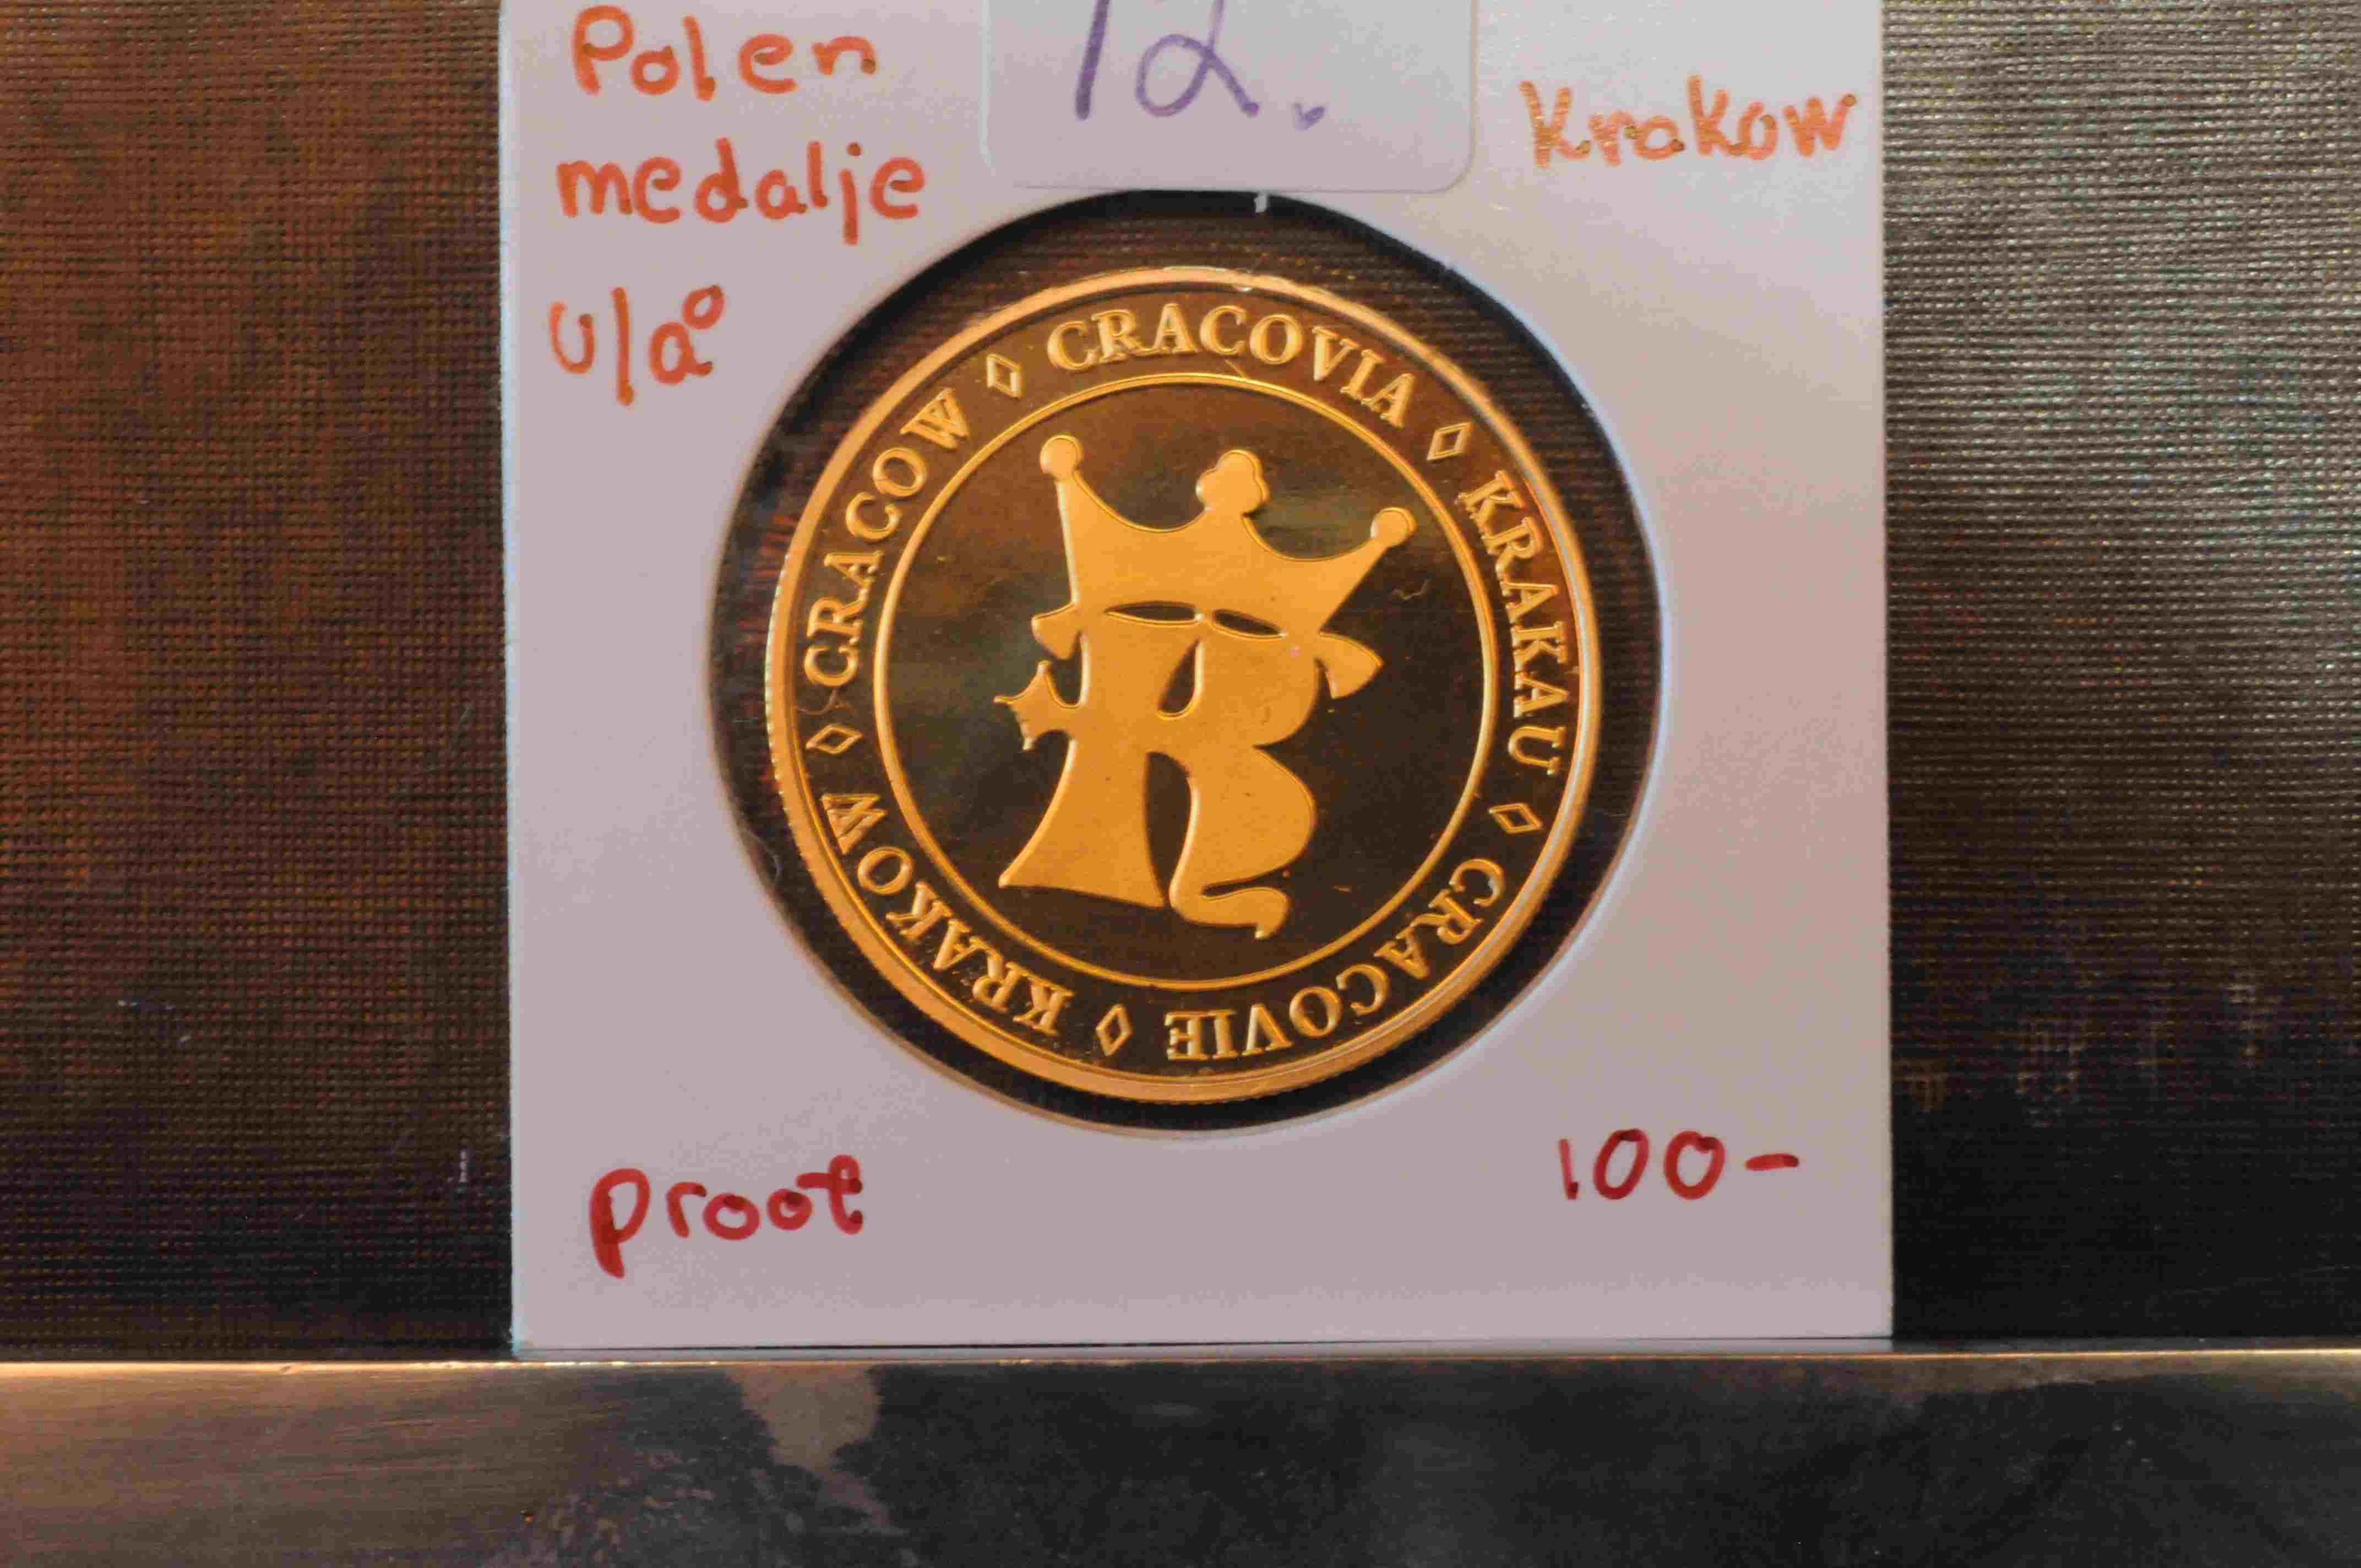 Polen medalje u/å Krakow proof